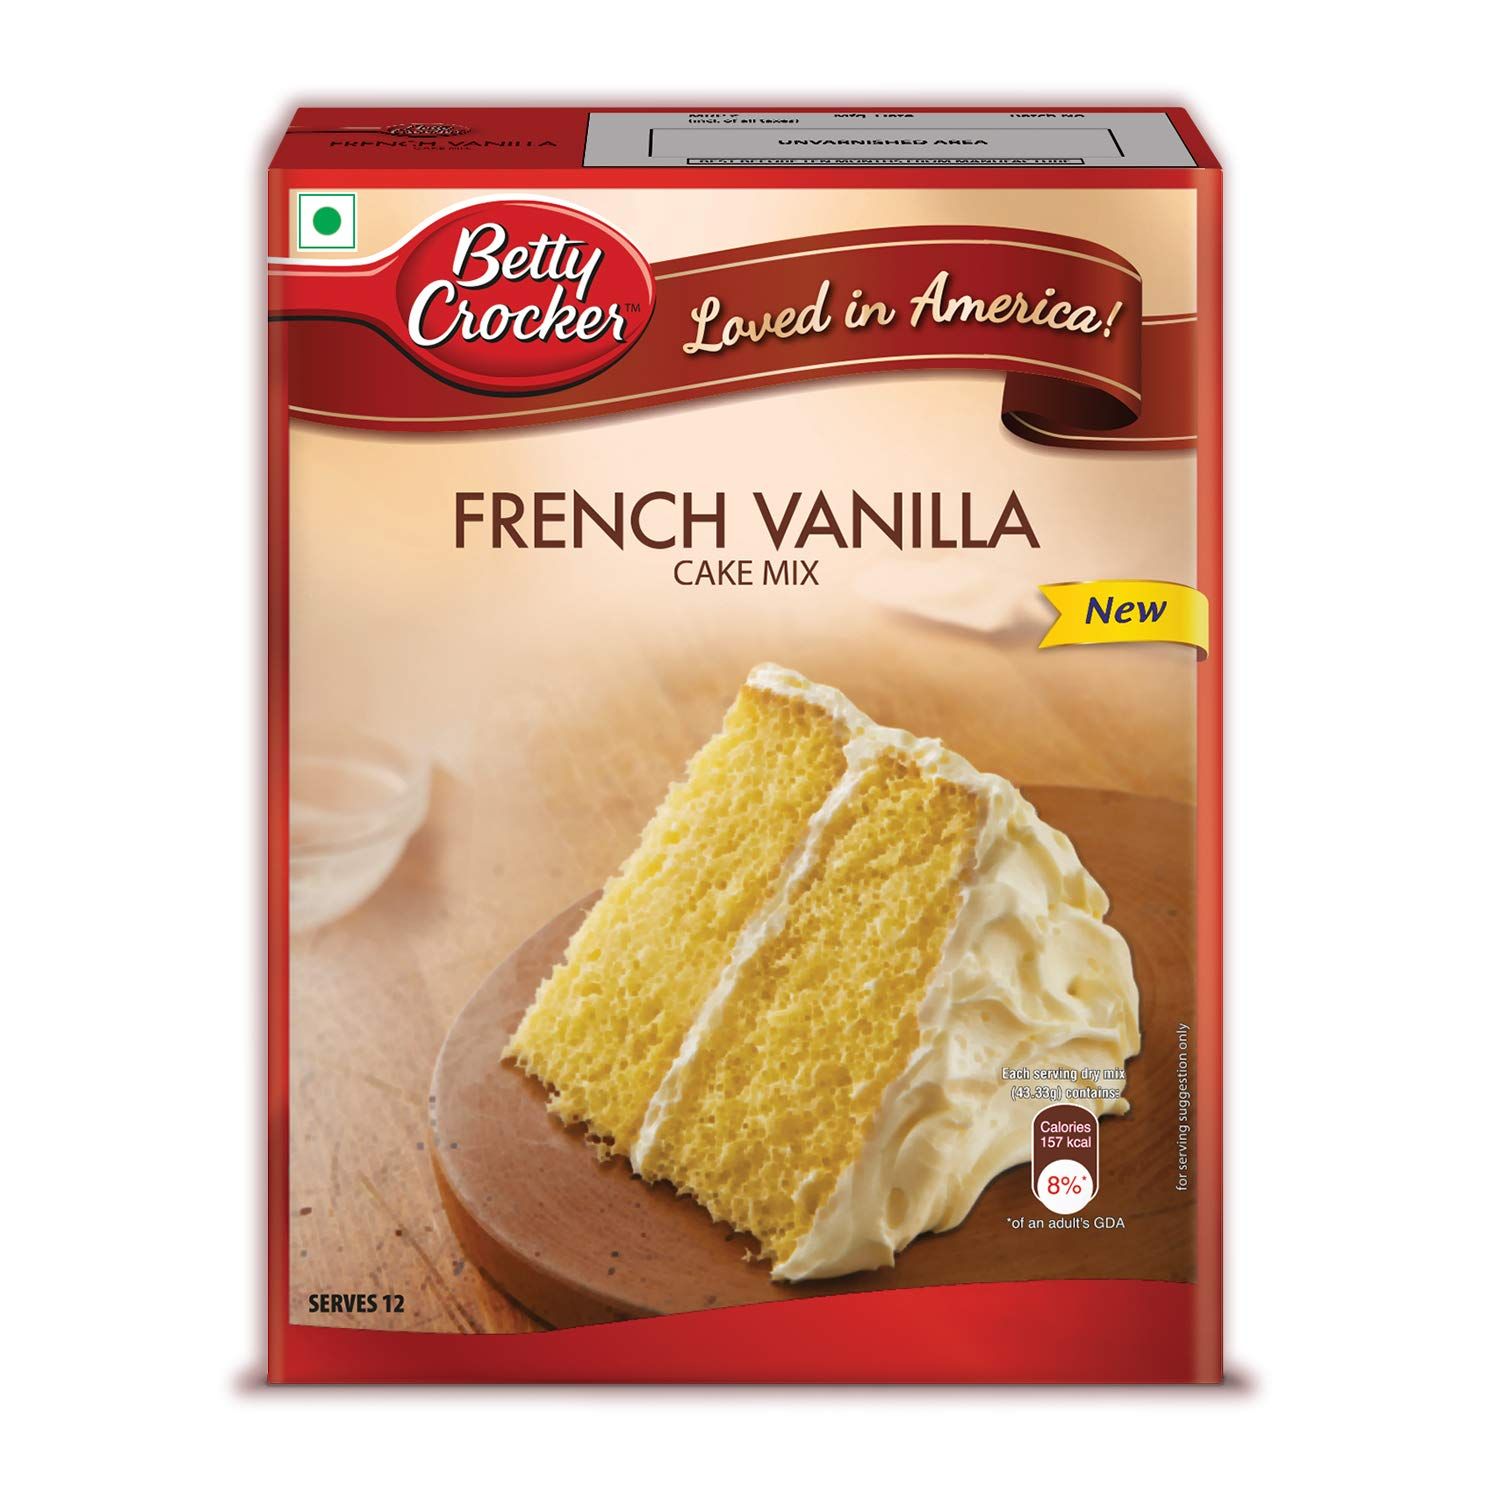 Betty Crocker French Vanilla Cake Mix Image